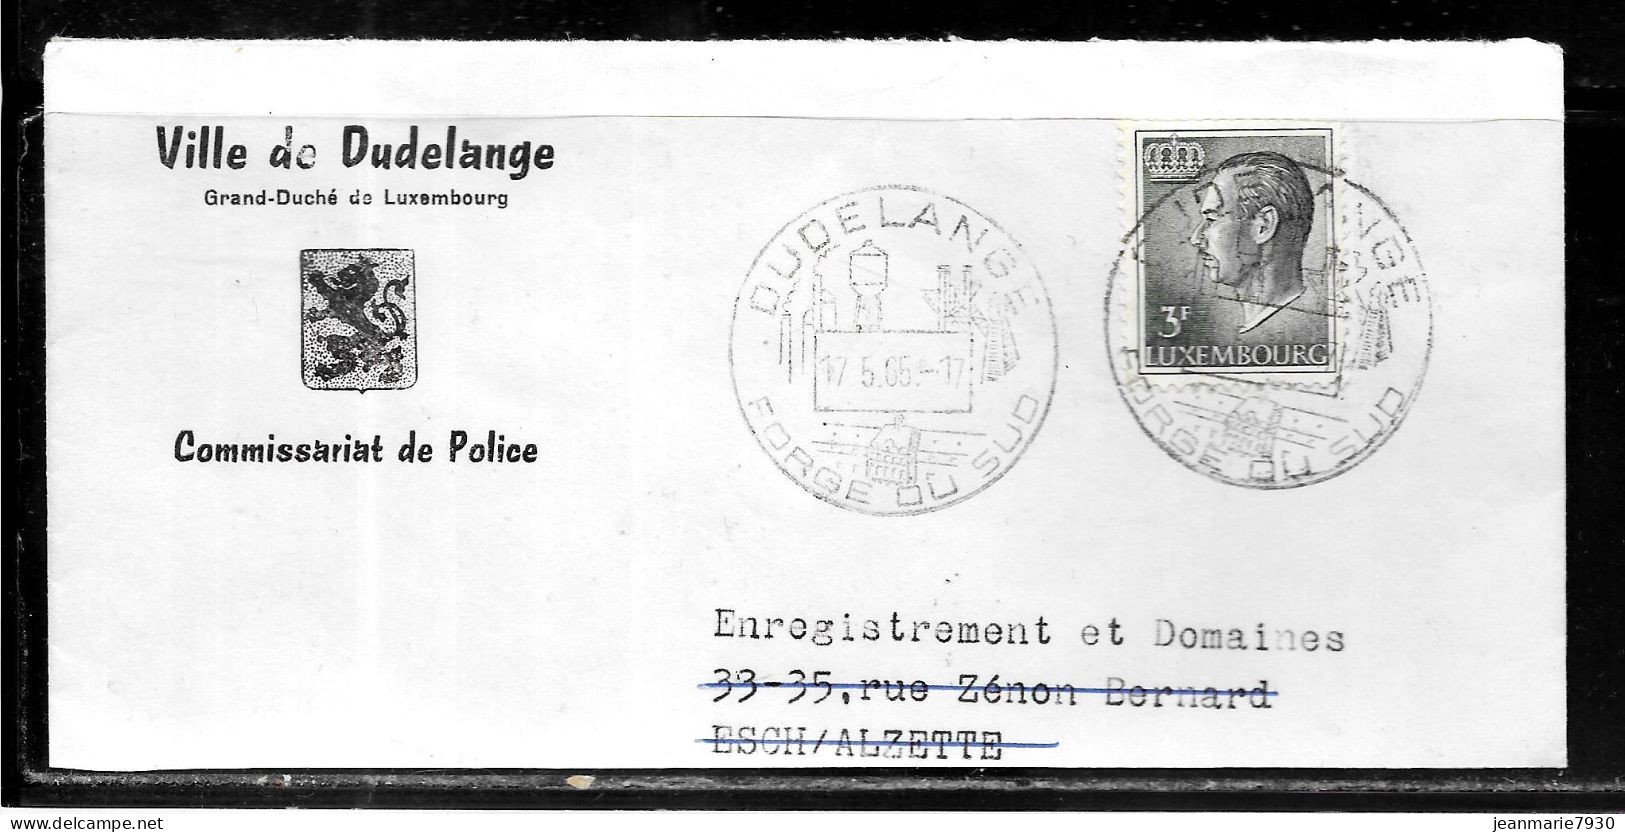 H354 - HAUT DE LETTRE DE LA VILLE DE DUDELANGE DU 17/05/65 - COMMISSARIAT DE POLICE - Covers & Documents